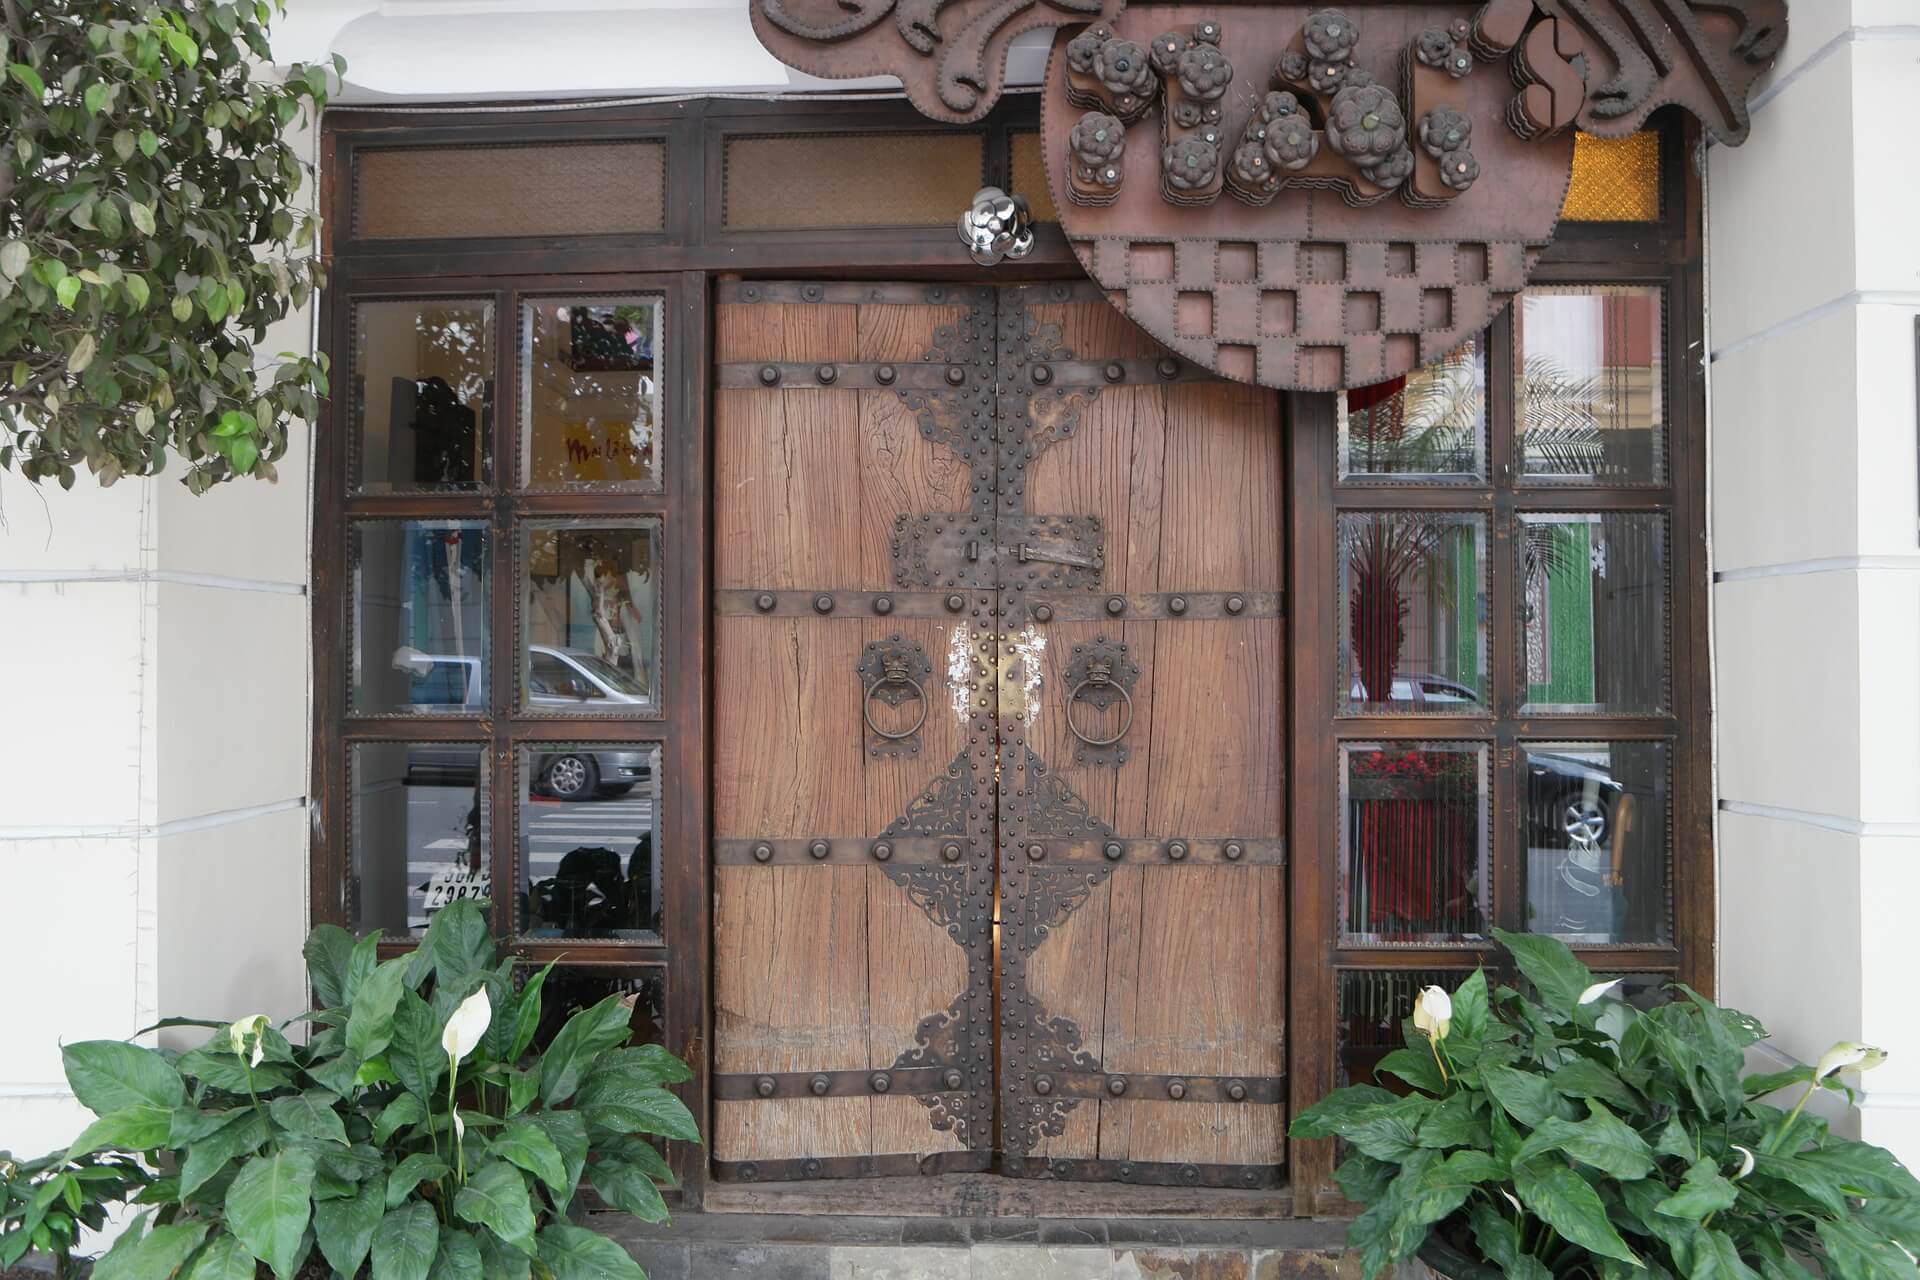 Best Wood Carving Designs for Main Door